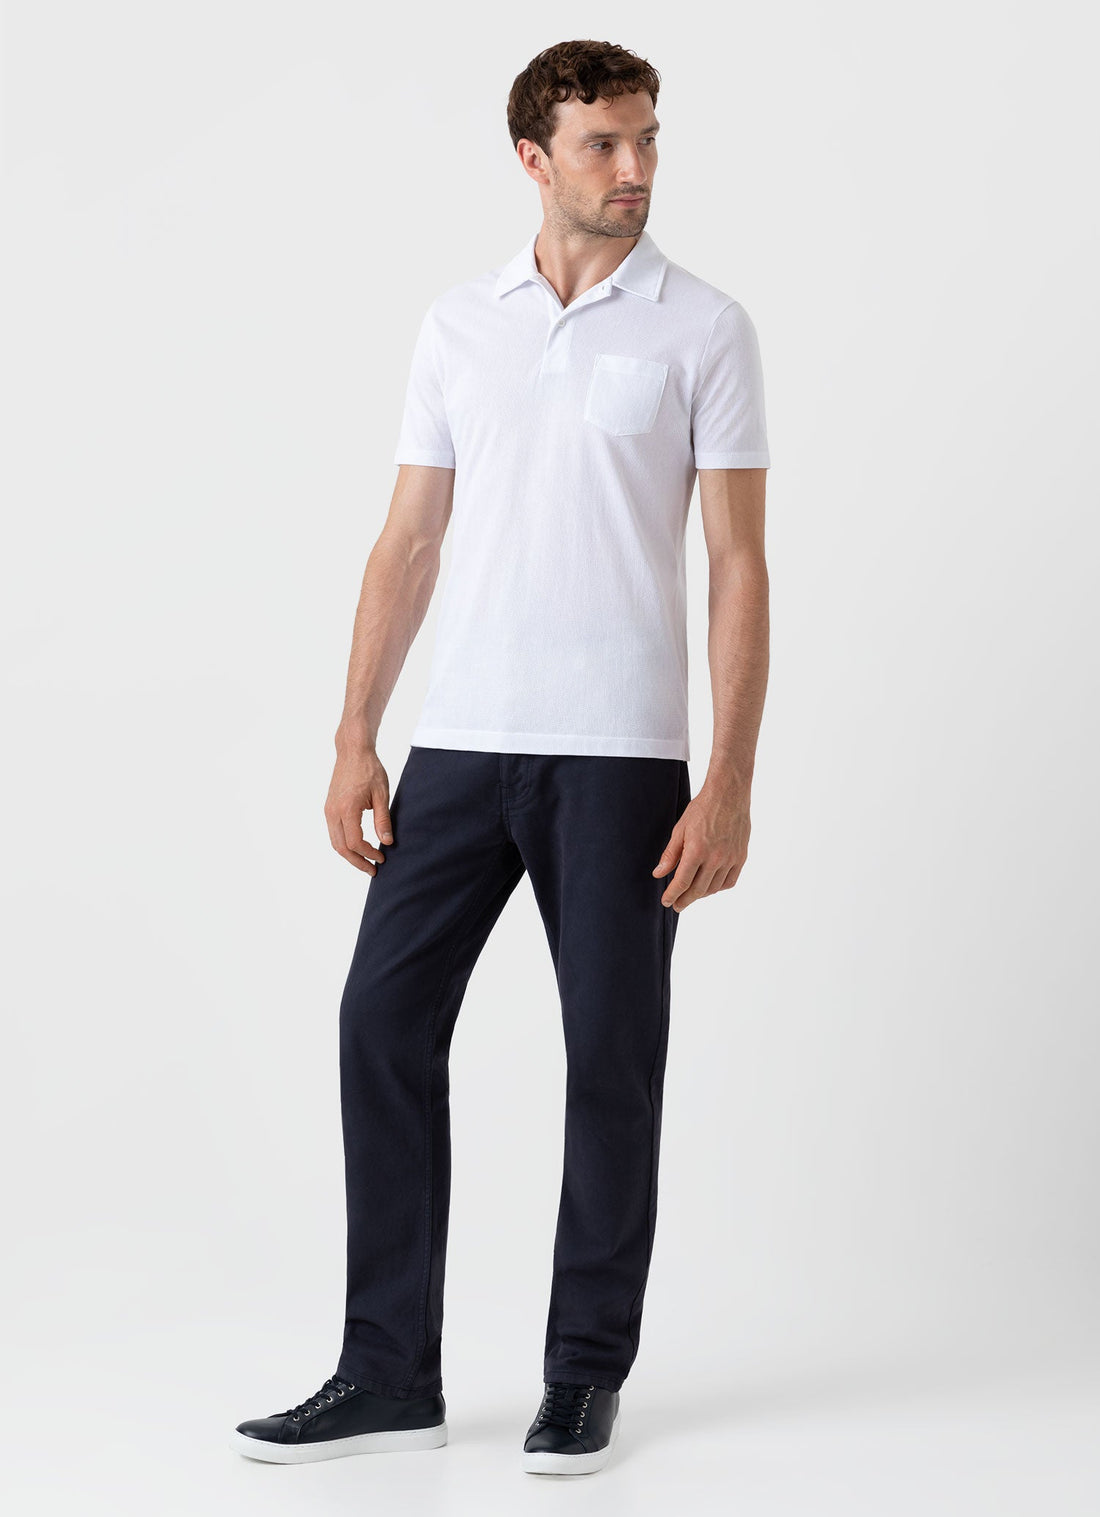 Style Spot Mens Everpress Trouser Formal Pants Premium Material